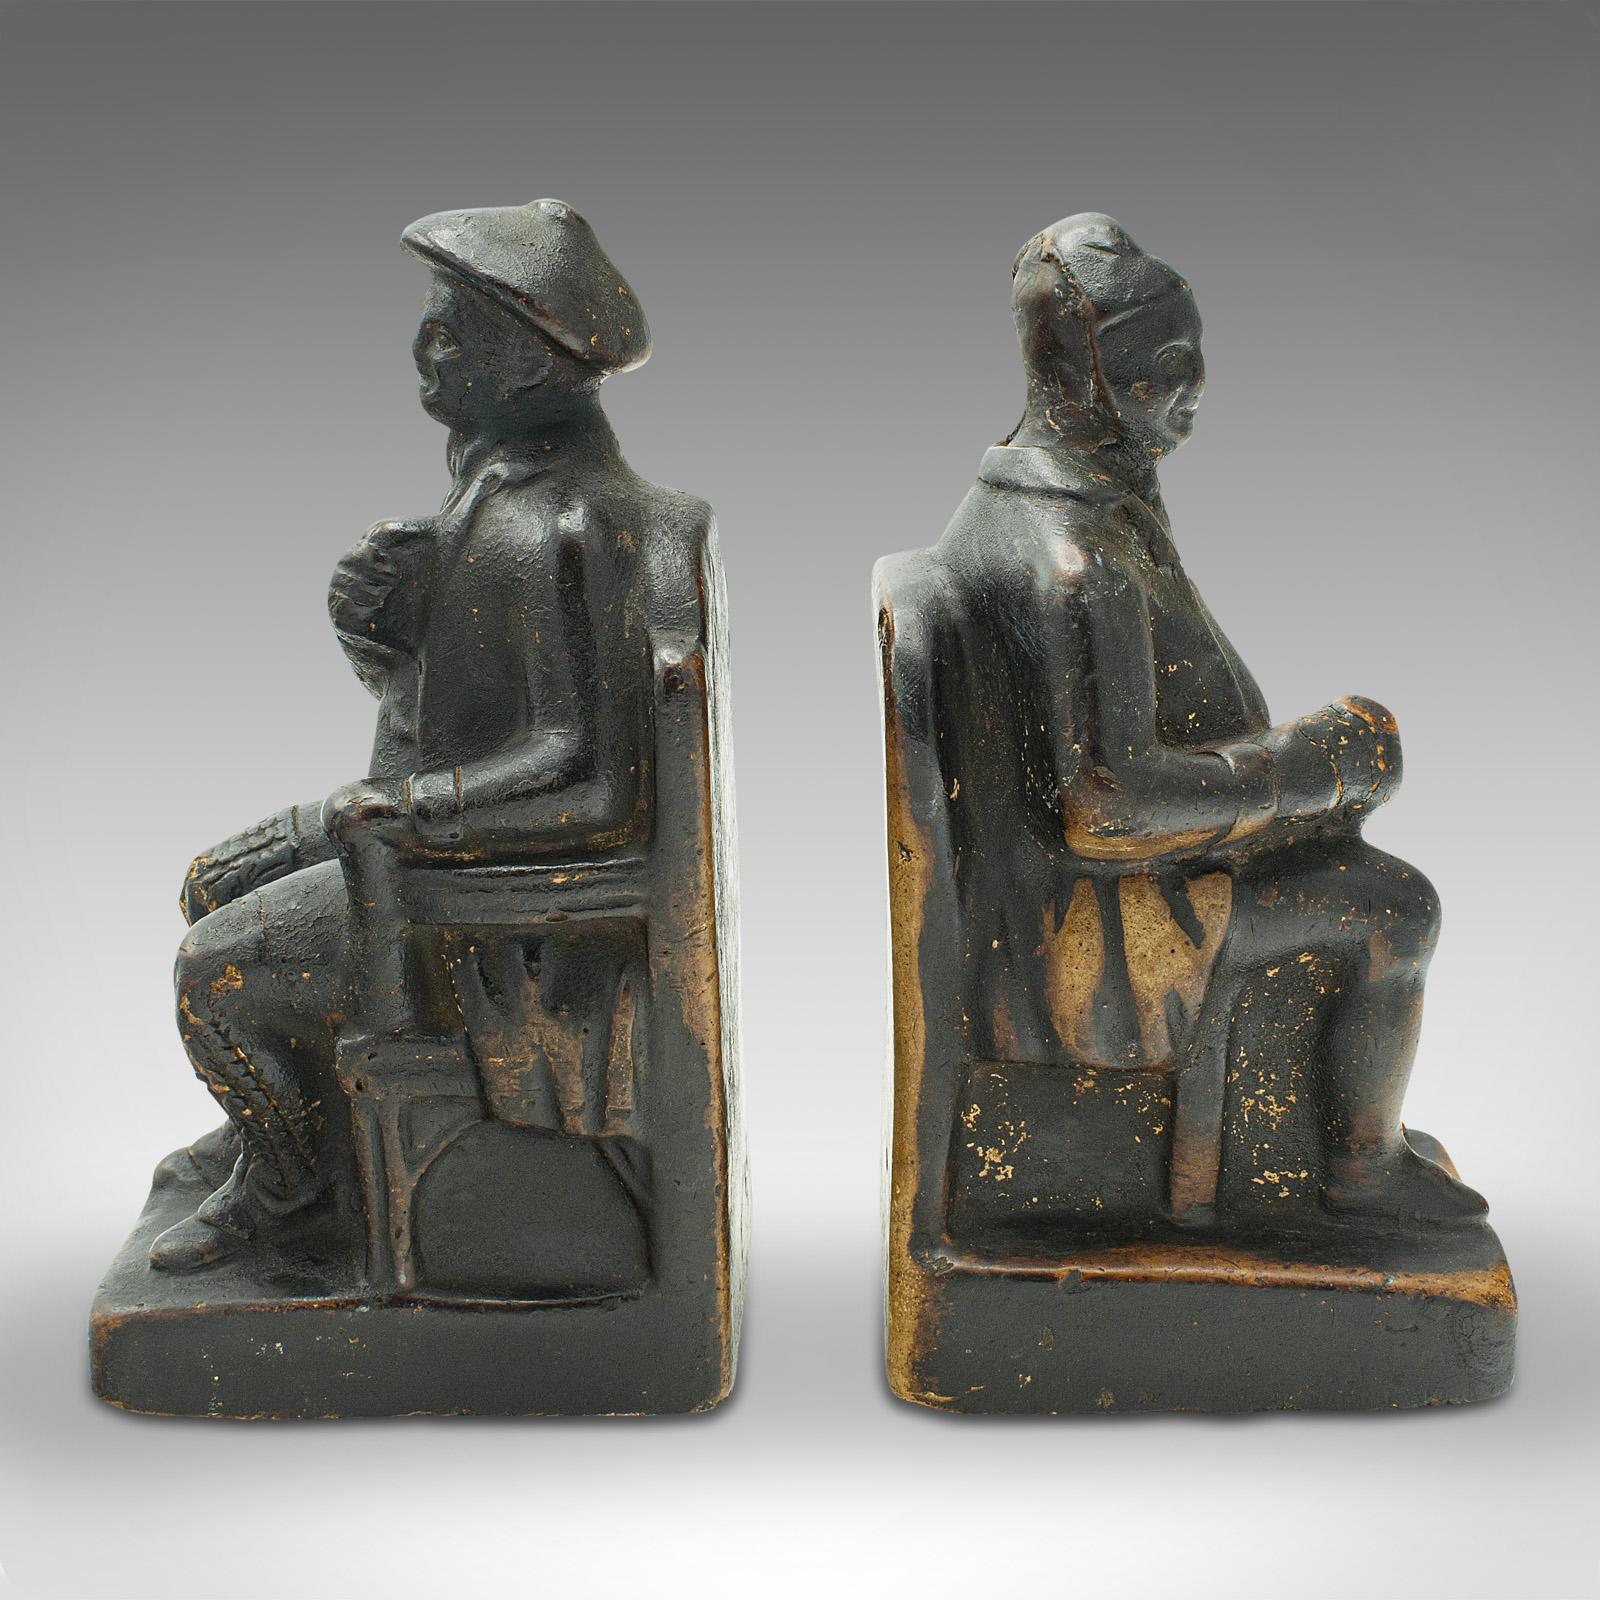 Il s'agit d'une paire de serre-livres figuratifs anciens. Repose-livre hollandais en plâtre représentant un homme et une femme assis, datant de la fin de la période victorienne, vers 1900.

Un bel exemple de l'artisanat néerlandais, avec un